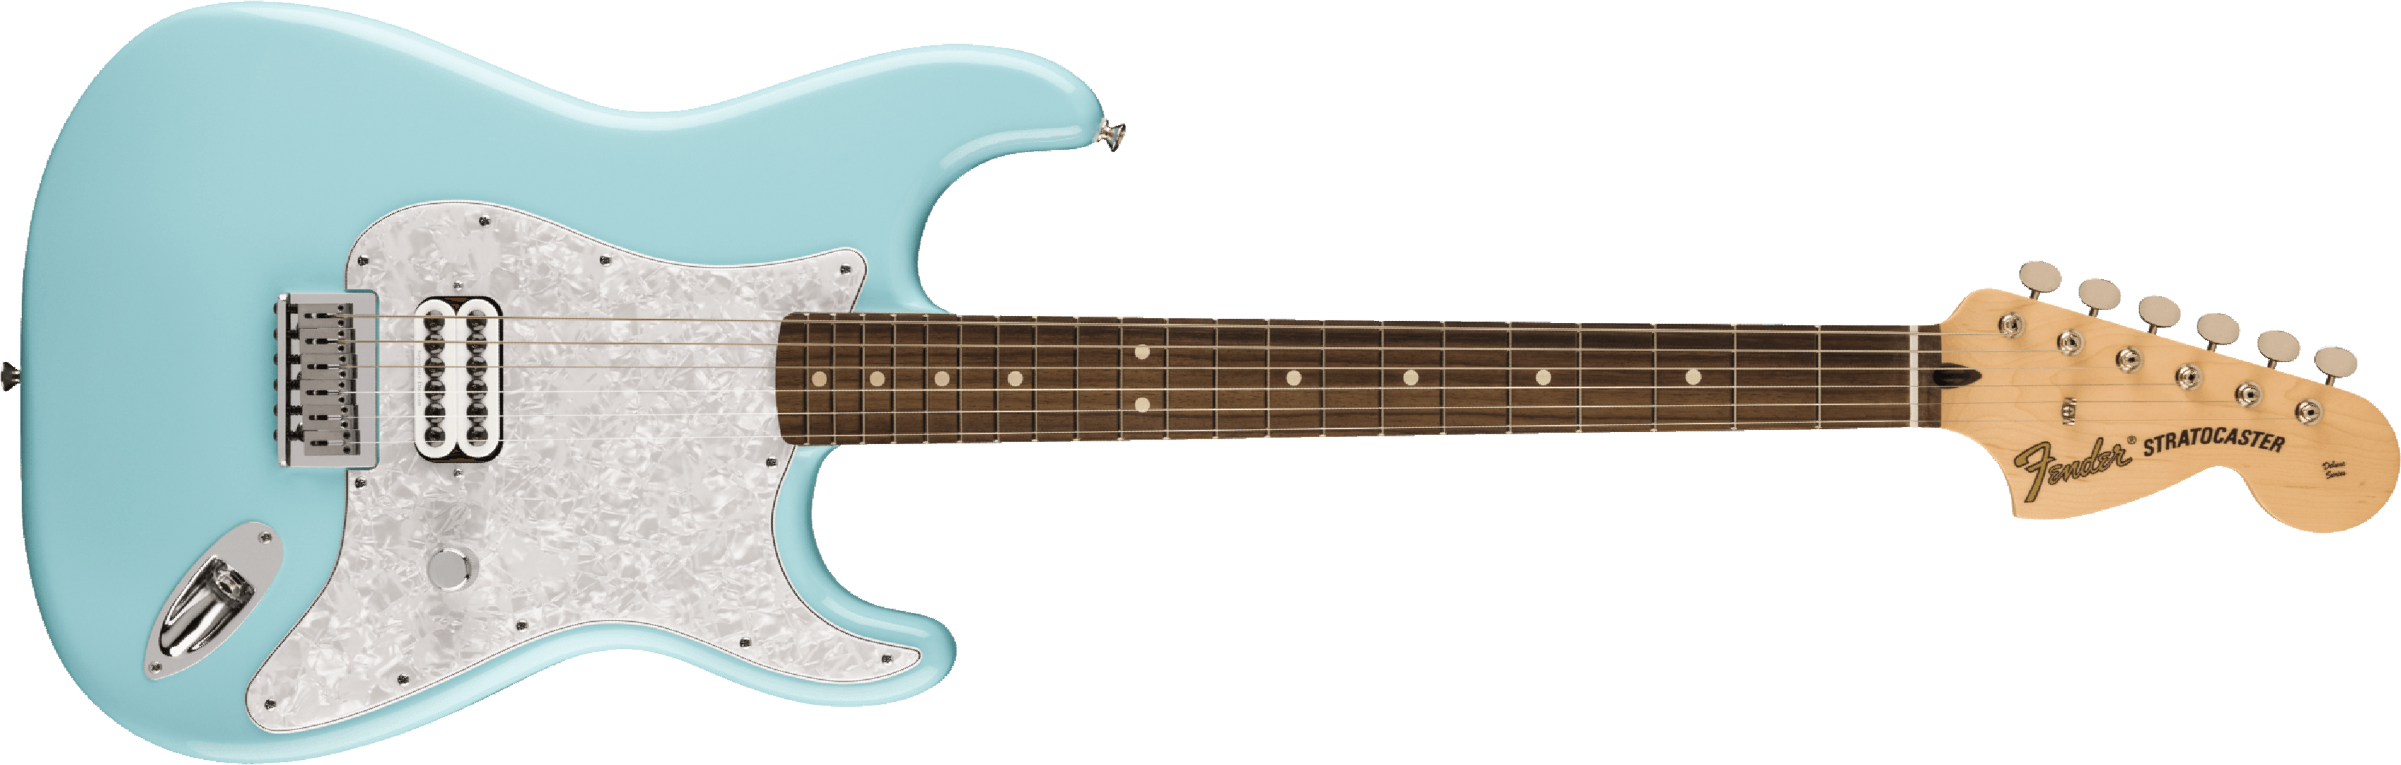 Fender Tom Delonge Ltd Mex Signature 1h Ht Rw - Daphne Blue - Str shape electric guitar - Main picture